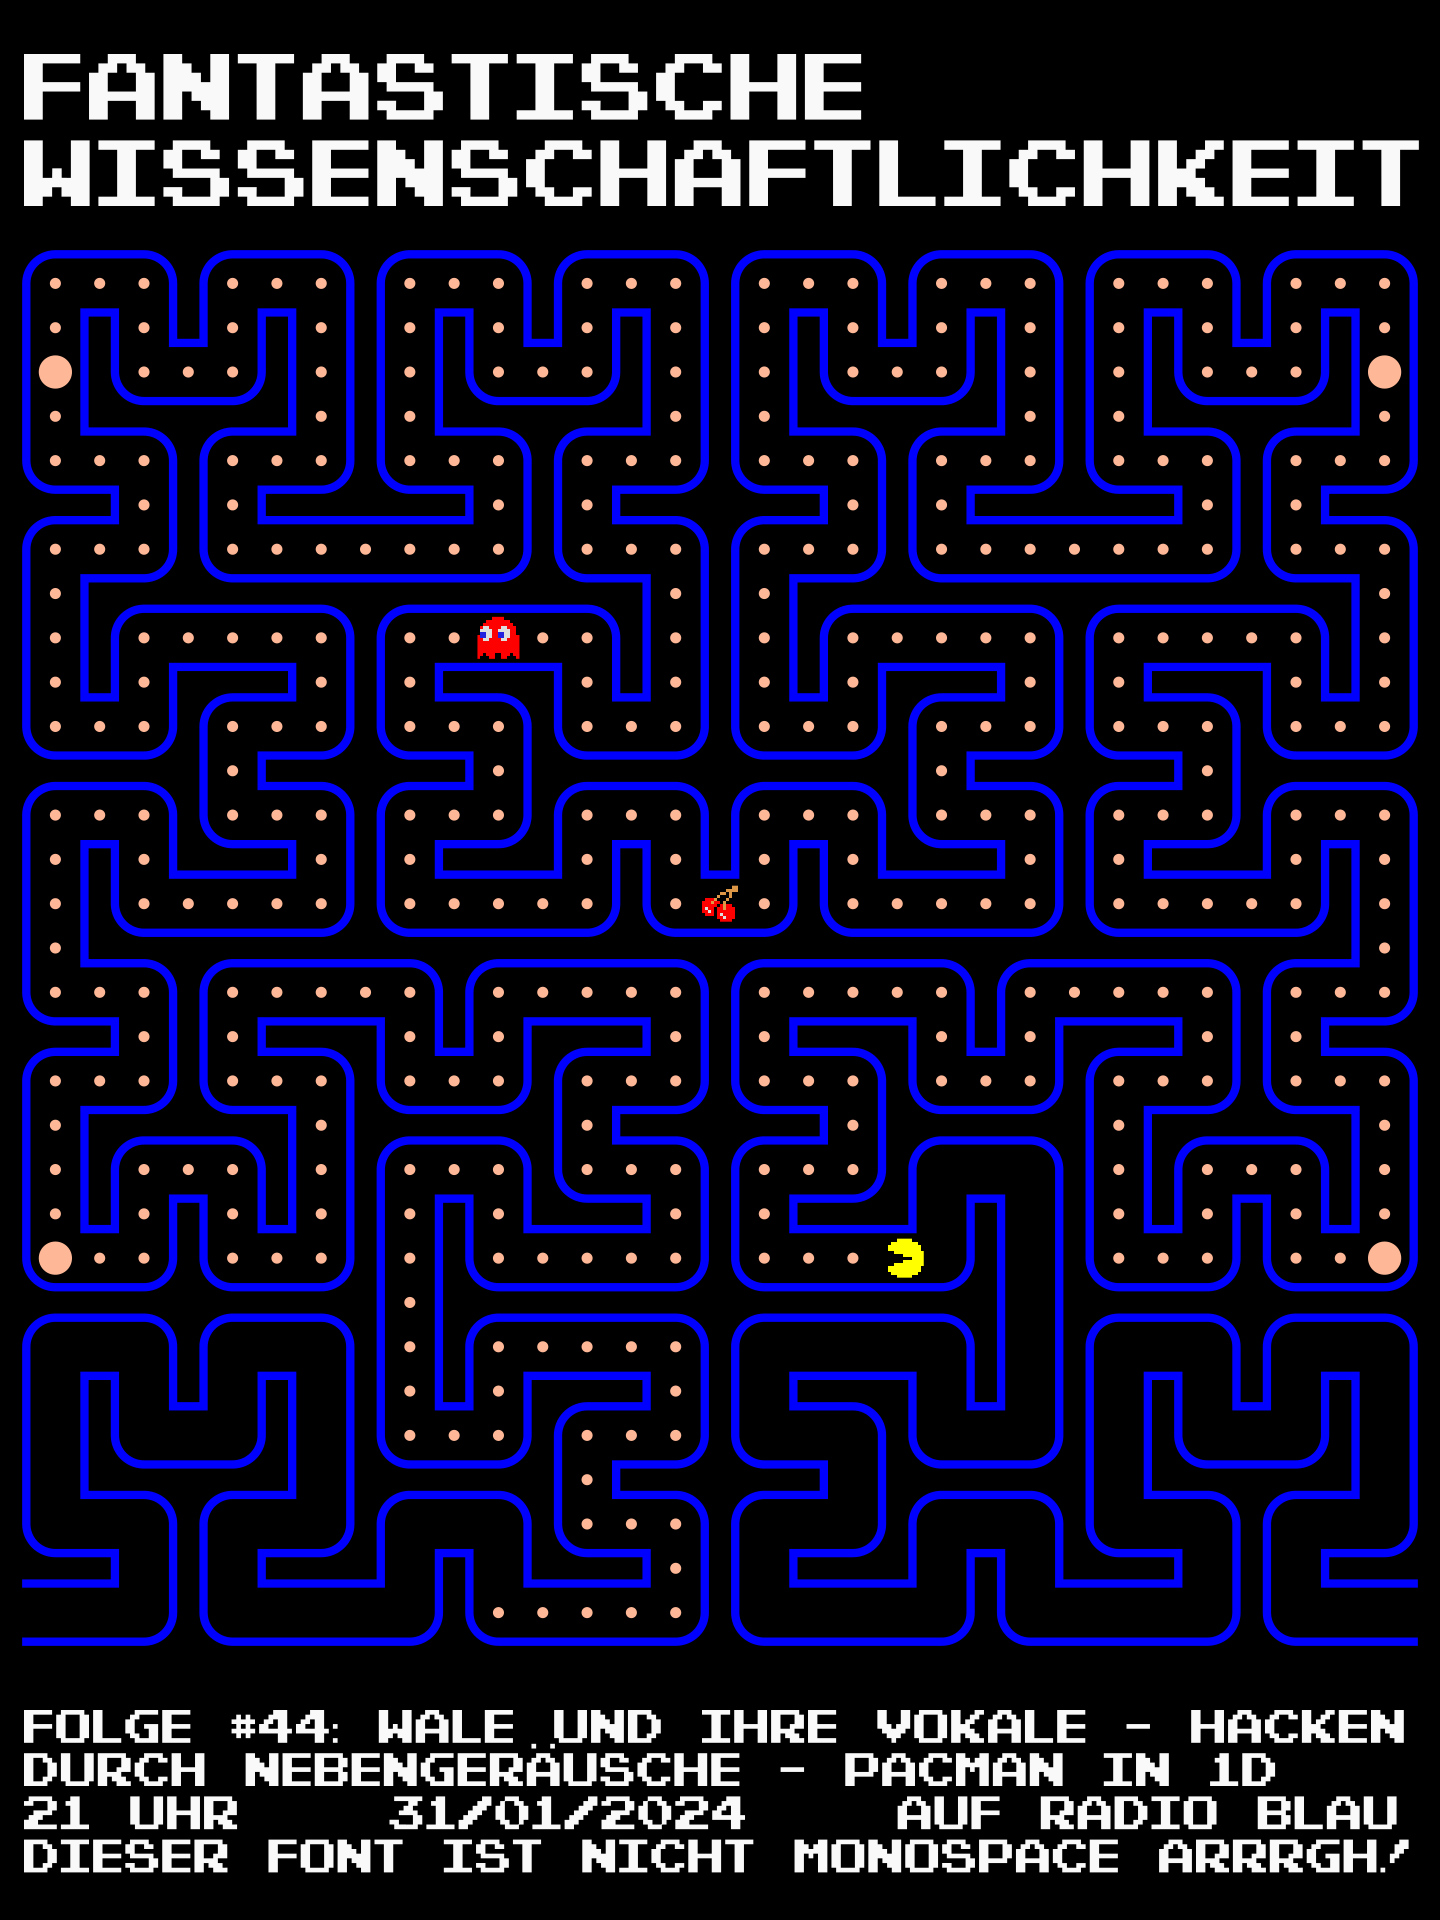 Flyer für FW#44: Ein Pacman-Labyrinth ohne Abzweigungen (wie ein in Schleifen gelegter eindimensionaler Tunnel). Text: "Folge #44: Wale und ihre Vokale – Hacken durch Nebengeräusche – Pacman in 1D, 21 Uhr 31/01/2024 auf Radio Blau. Dieser Font ist nicht Monospace ARRRGH!"